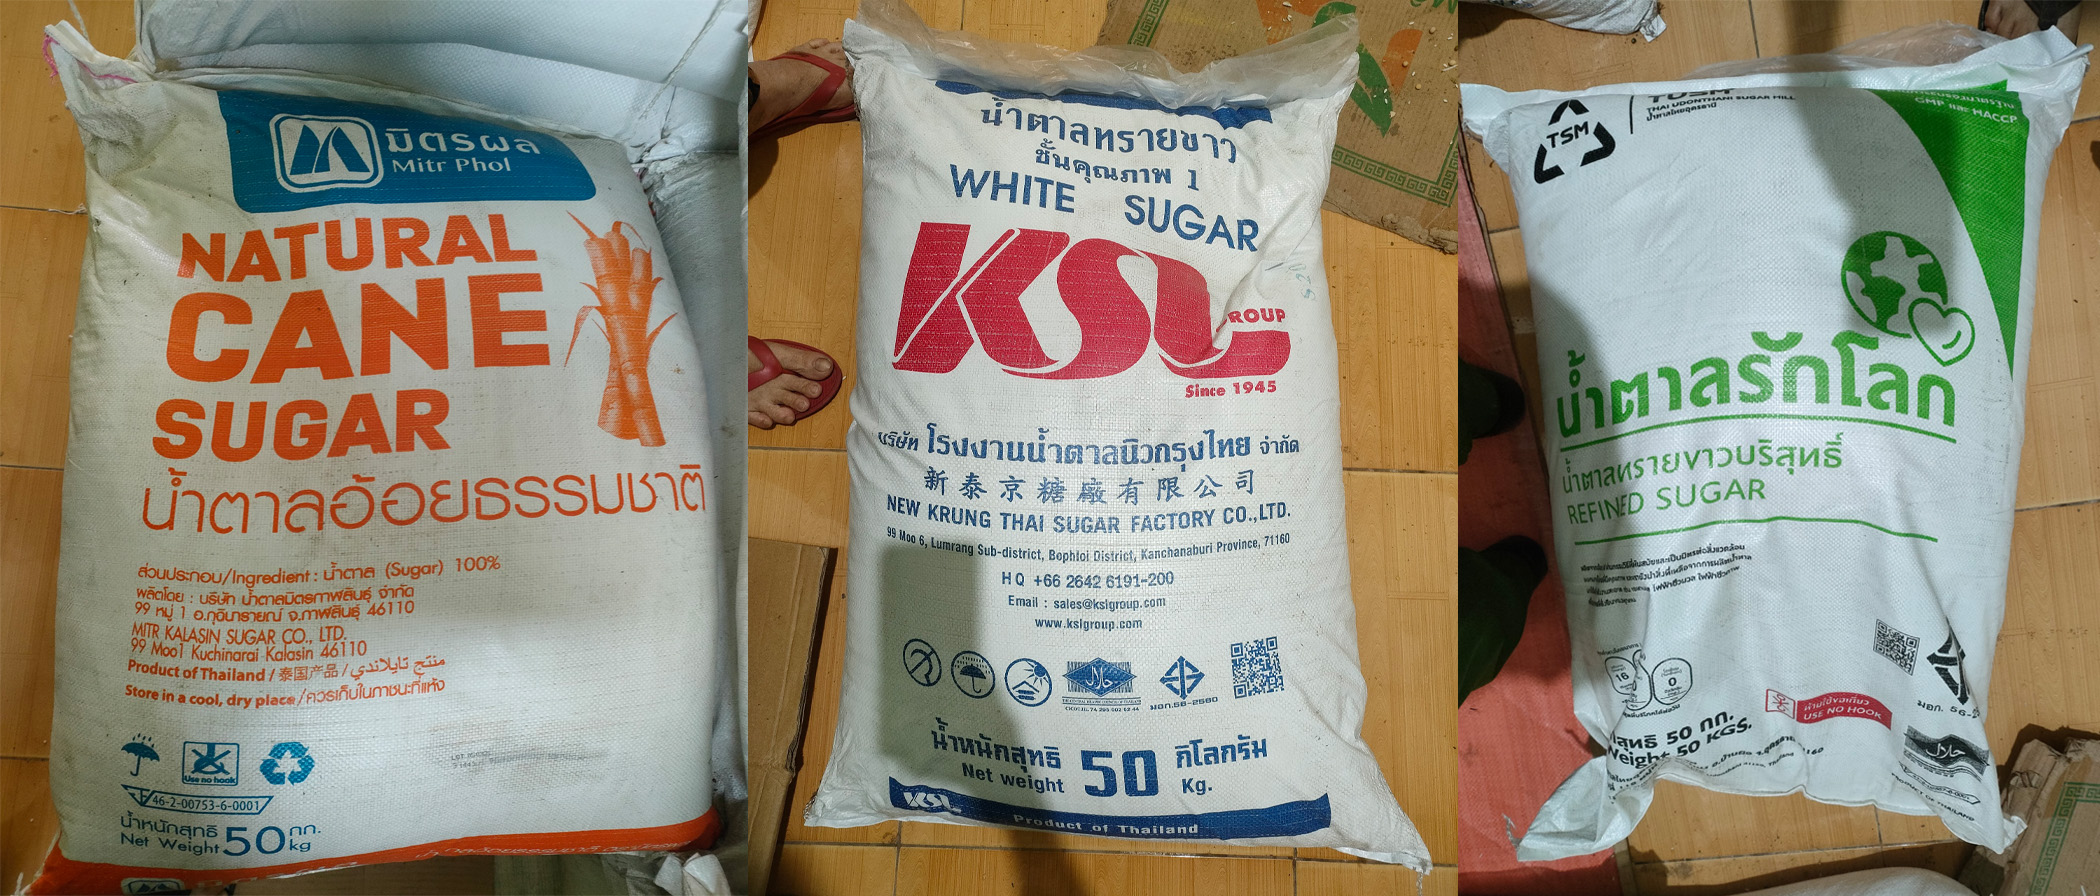 Bình Định: Thu giữ 1,6 tấn đường cát vàng nhập lậu